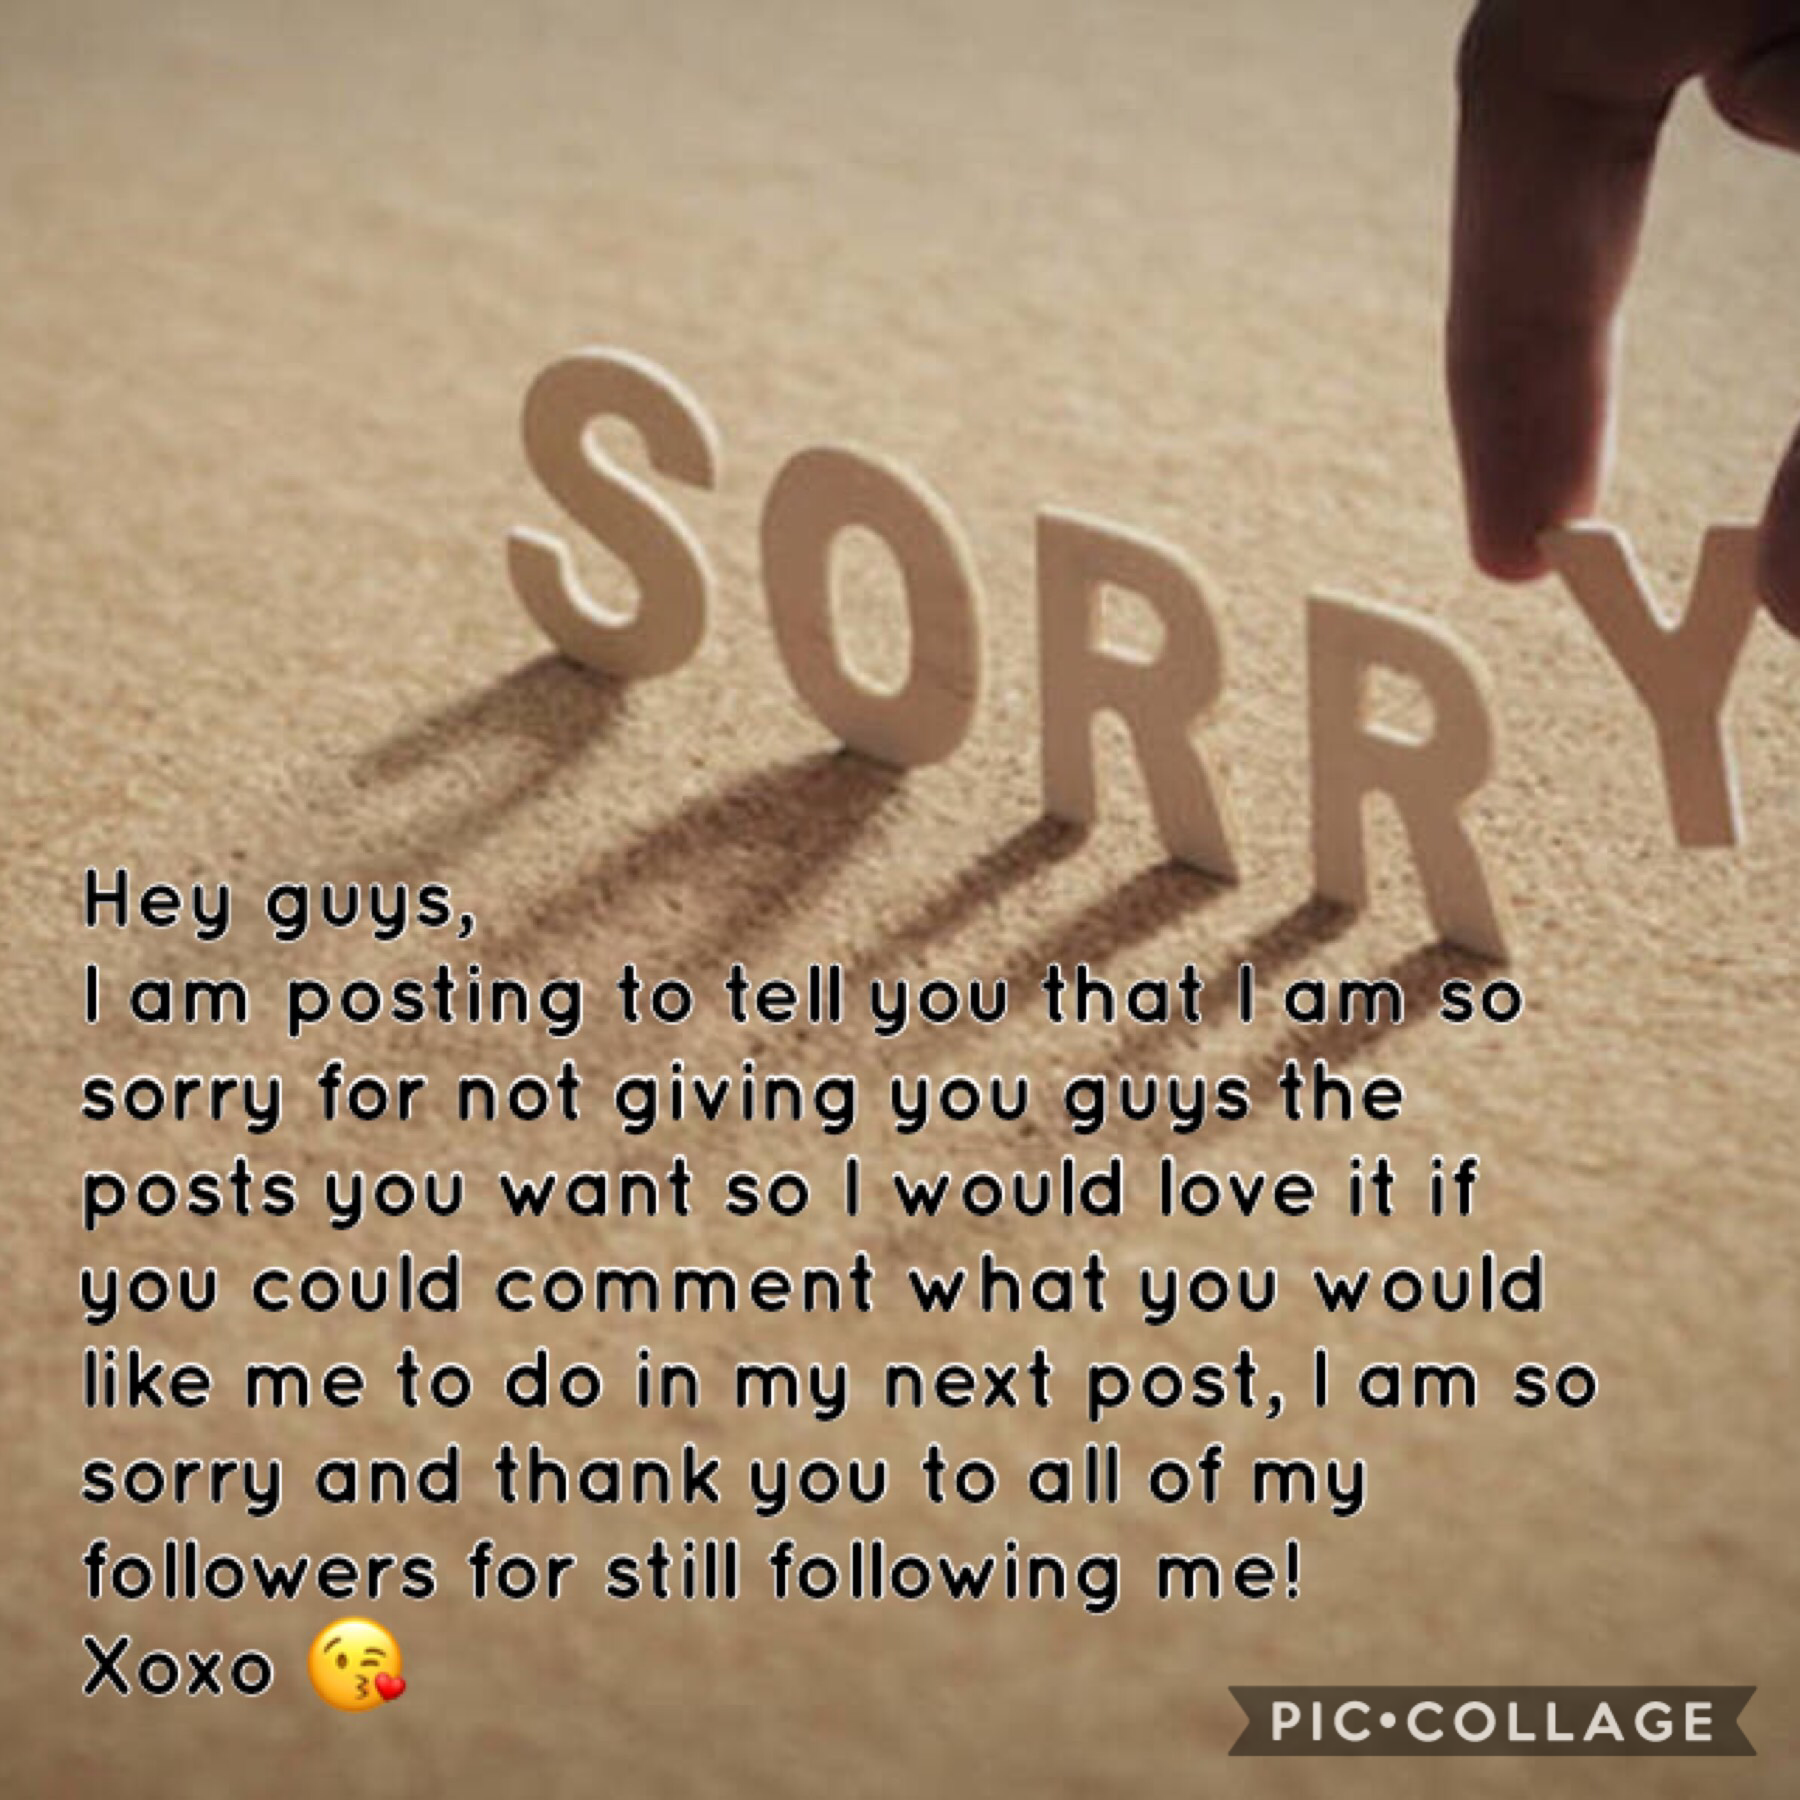 Soooo sorry! 😭 